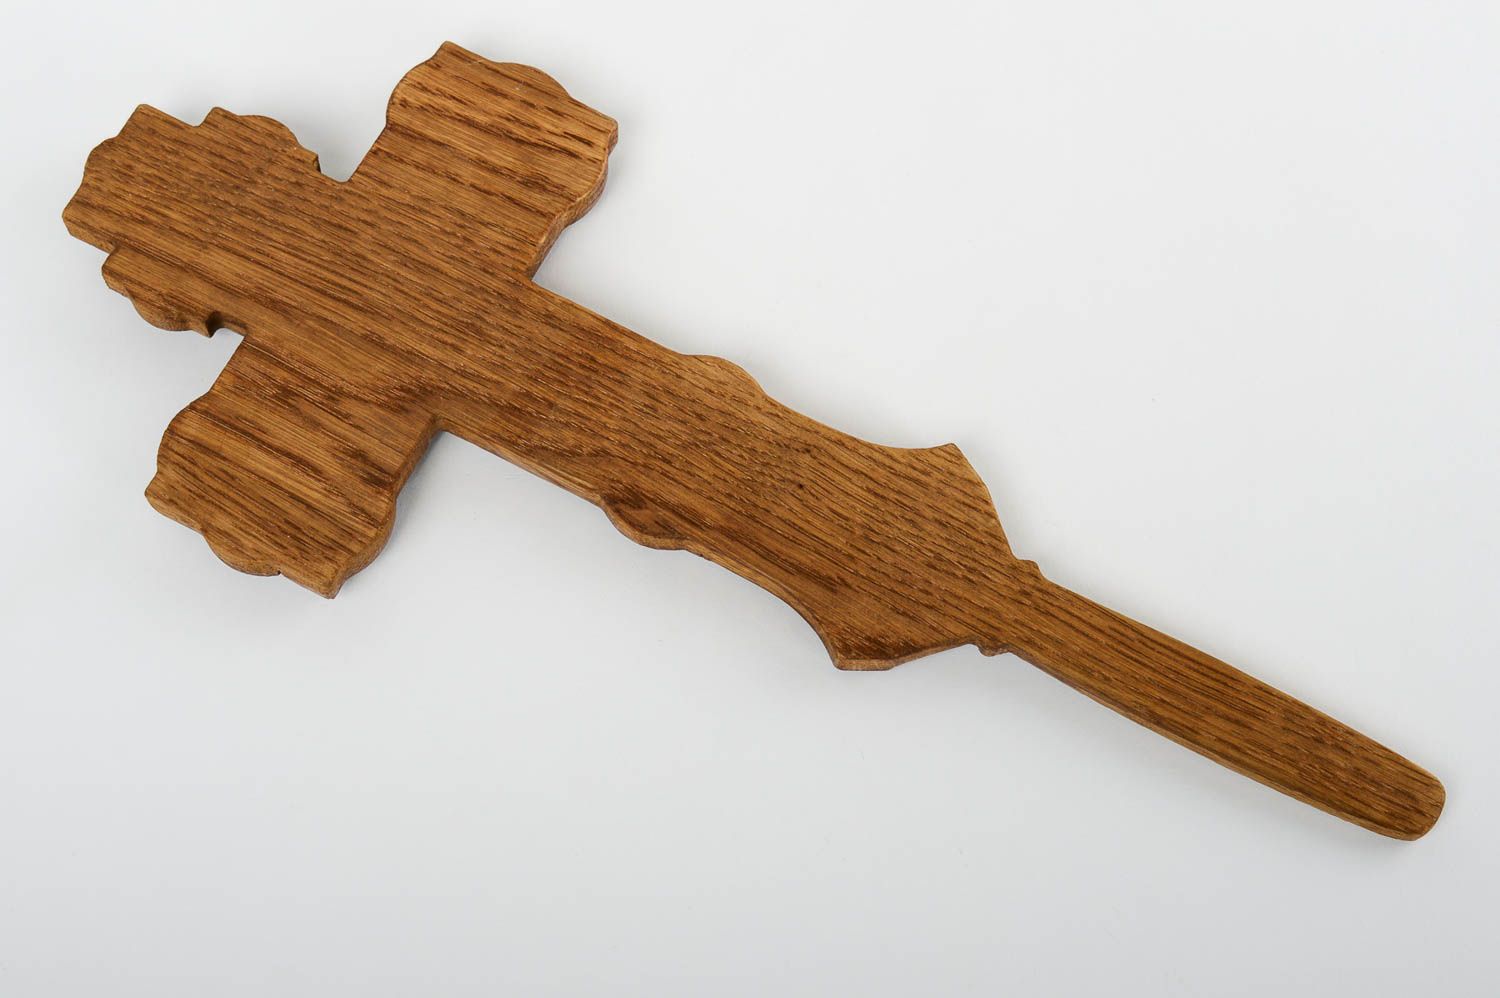 Cruz artesanal ortodoxa recuerdo religioso de madera regalo para amigos foto 4